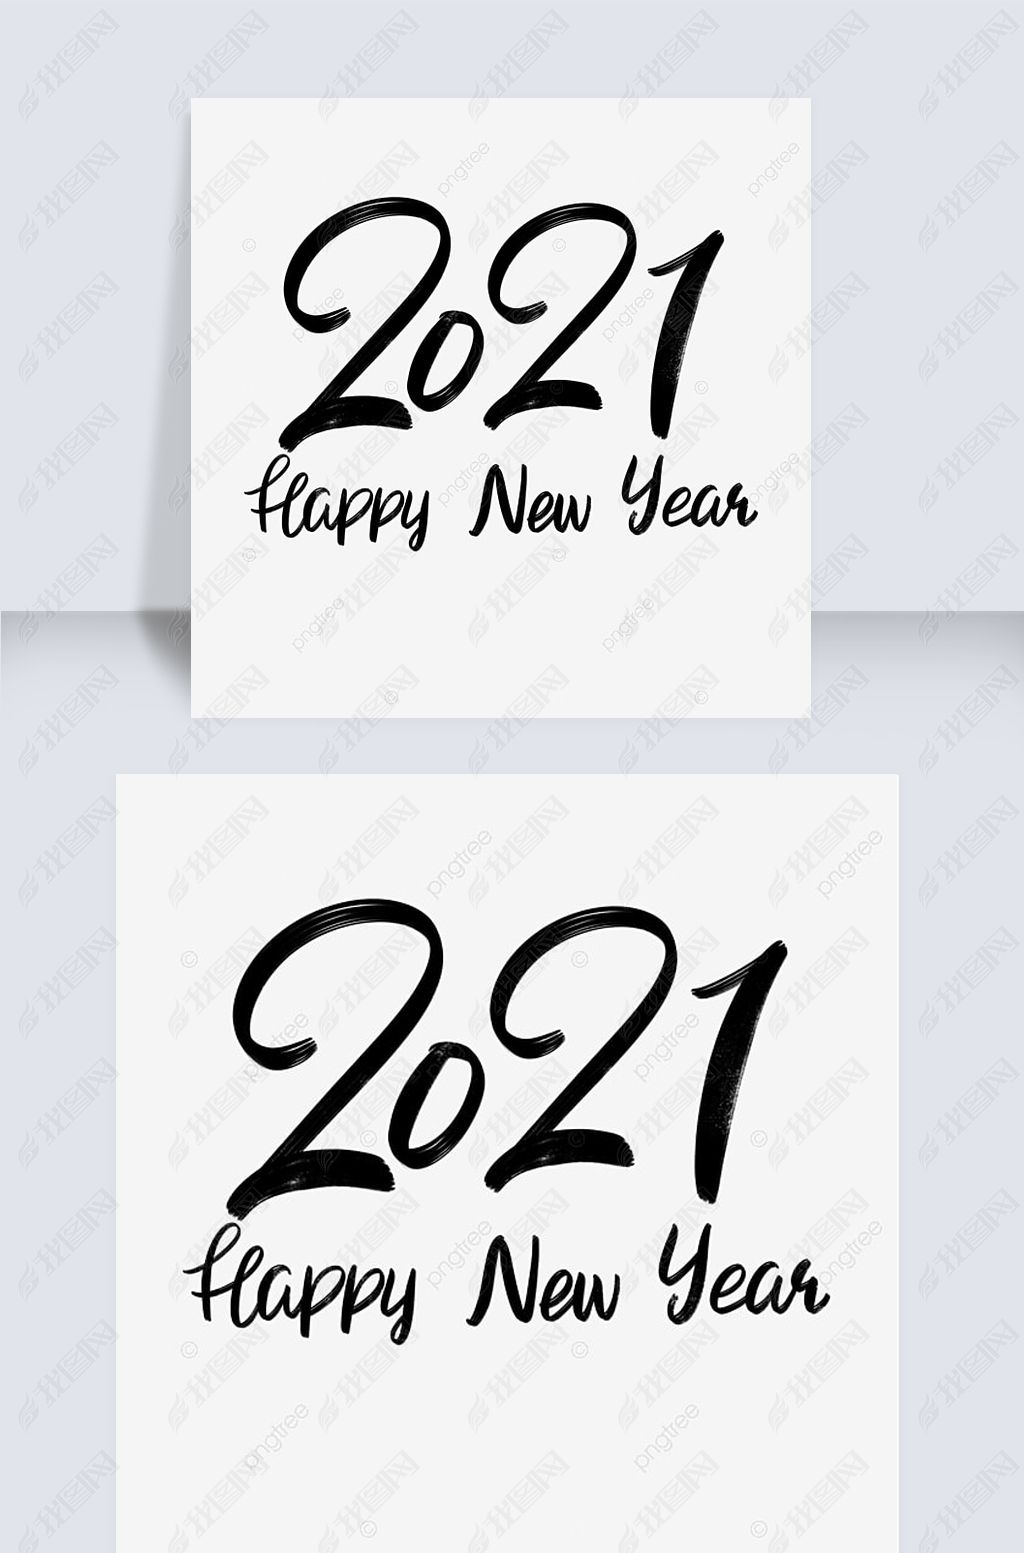 д2021 happy new year